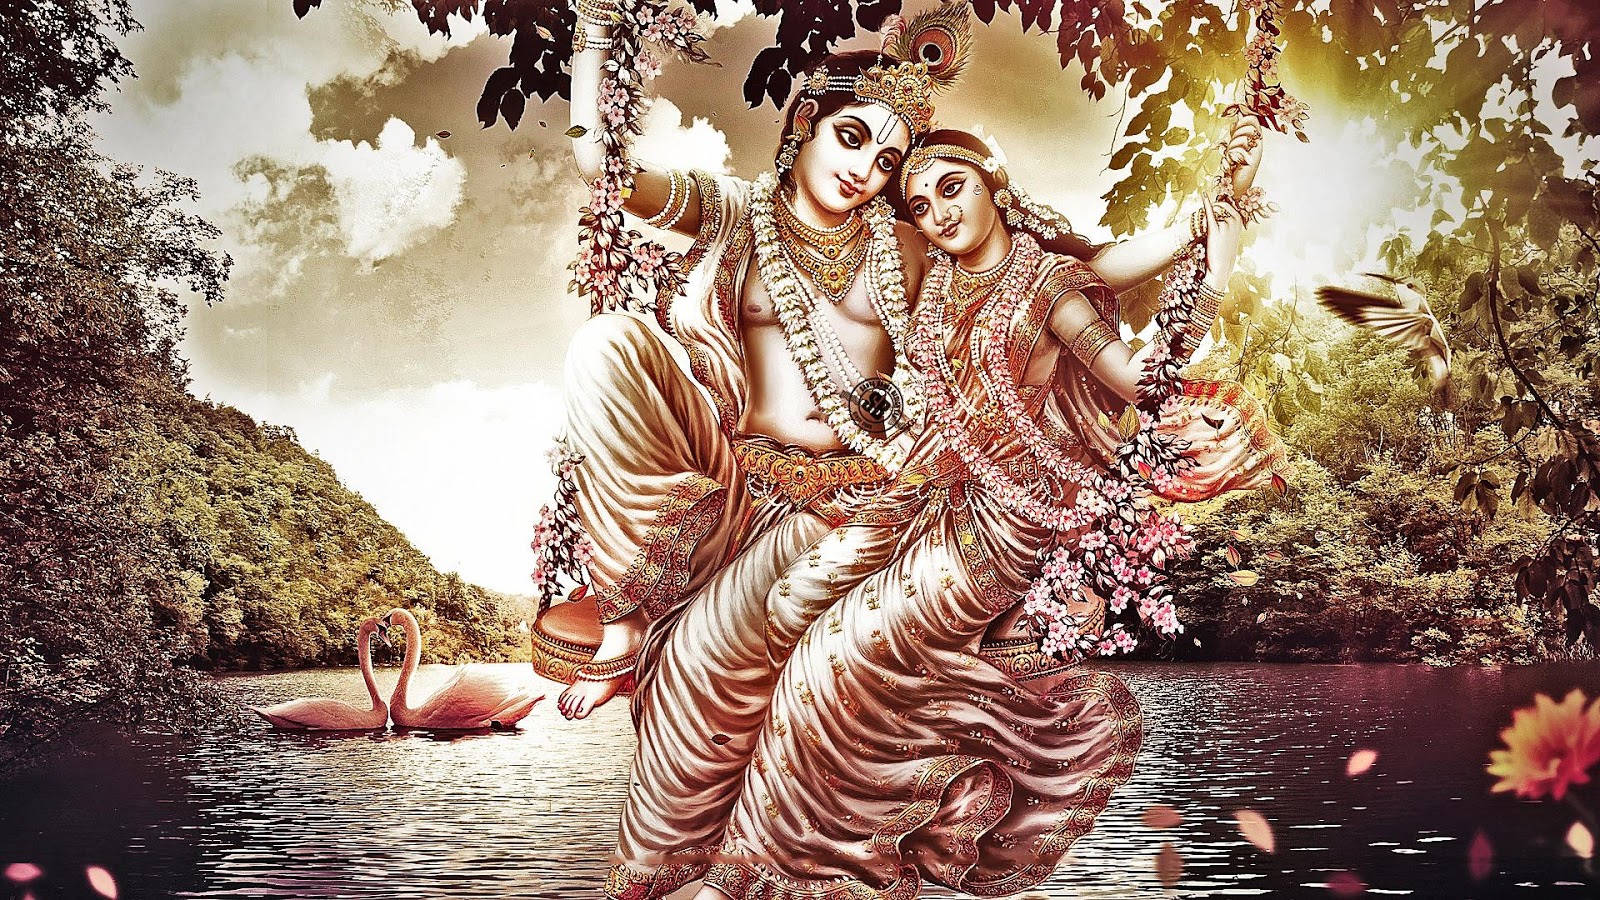 dios hindú fondos de pantalla hd completo,agua,cg artwork,mitología,ilustración,árbol